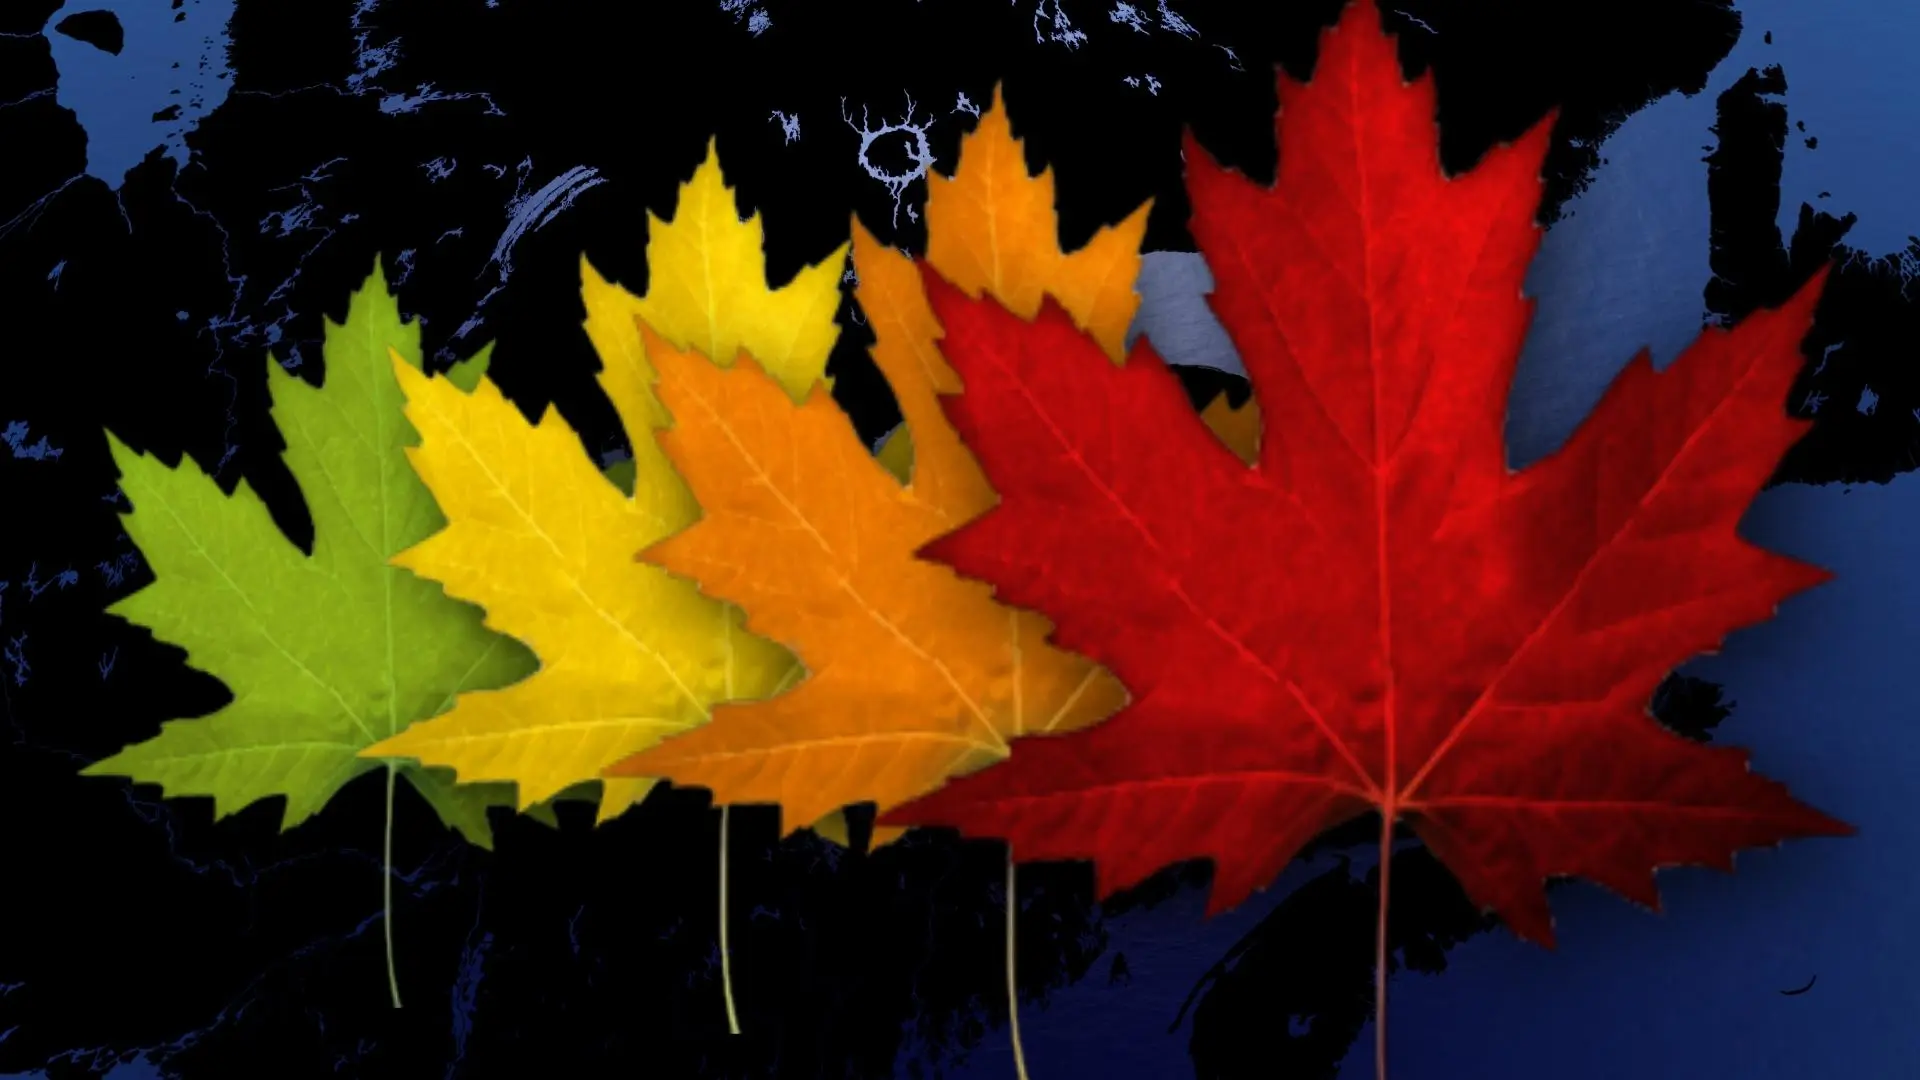 Les couleurs d'automne atteignent leur apogée ce week-end !